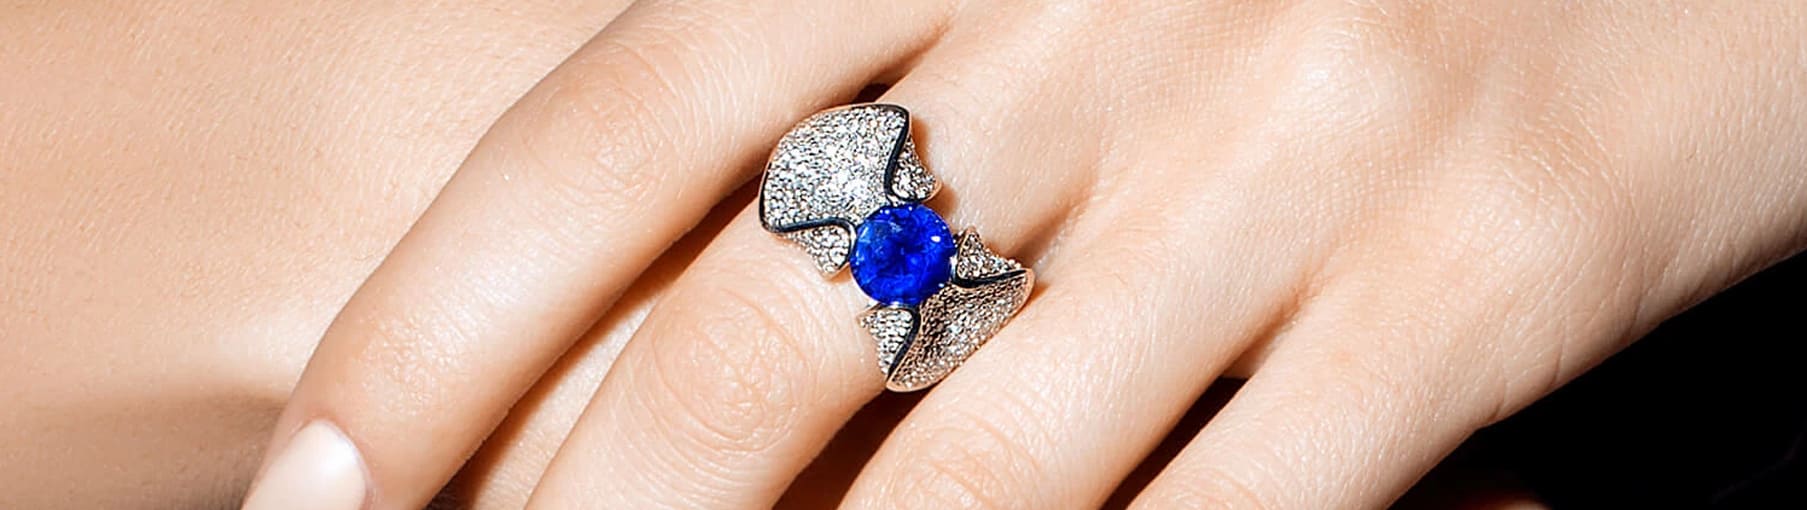 Топ синих и голубых камней в ювелирных украшениях: популярные драгоценные иполудрагоценные минералы синего цвета